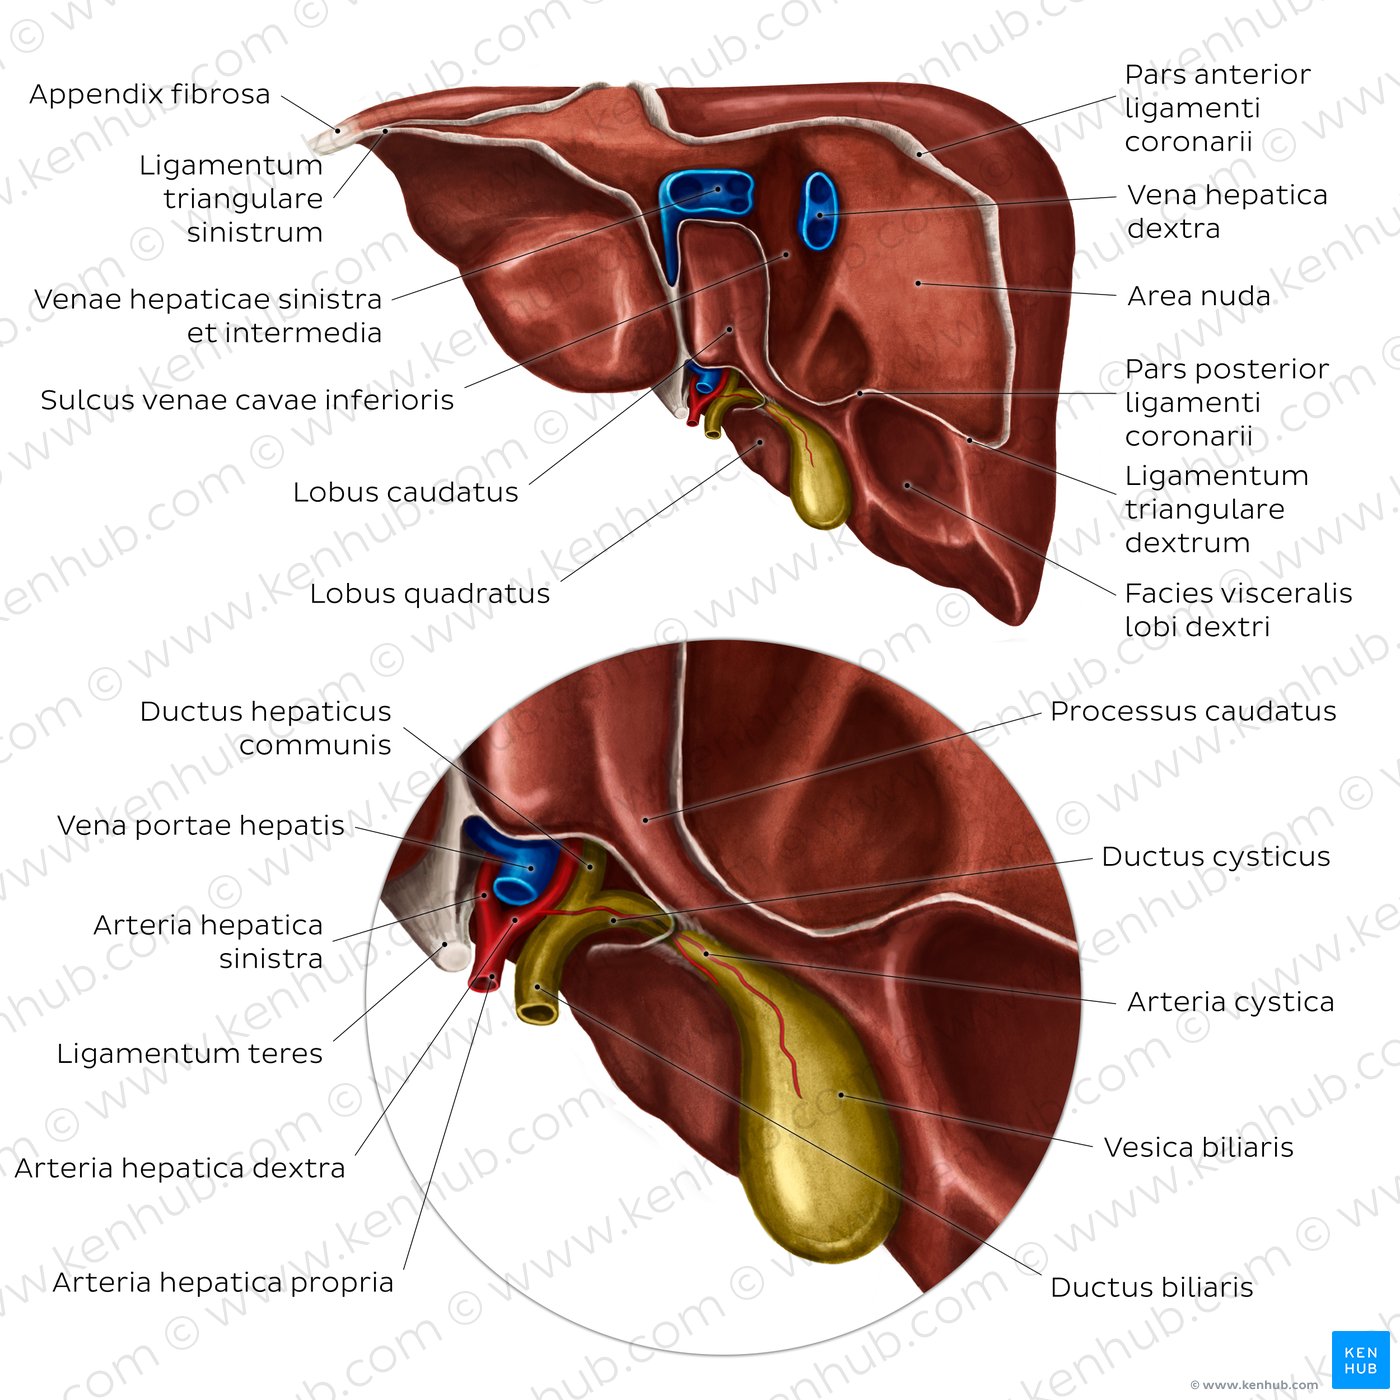 Anatomie der Leber - Ansicht von posterior